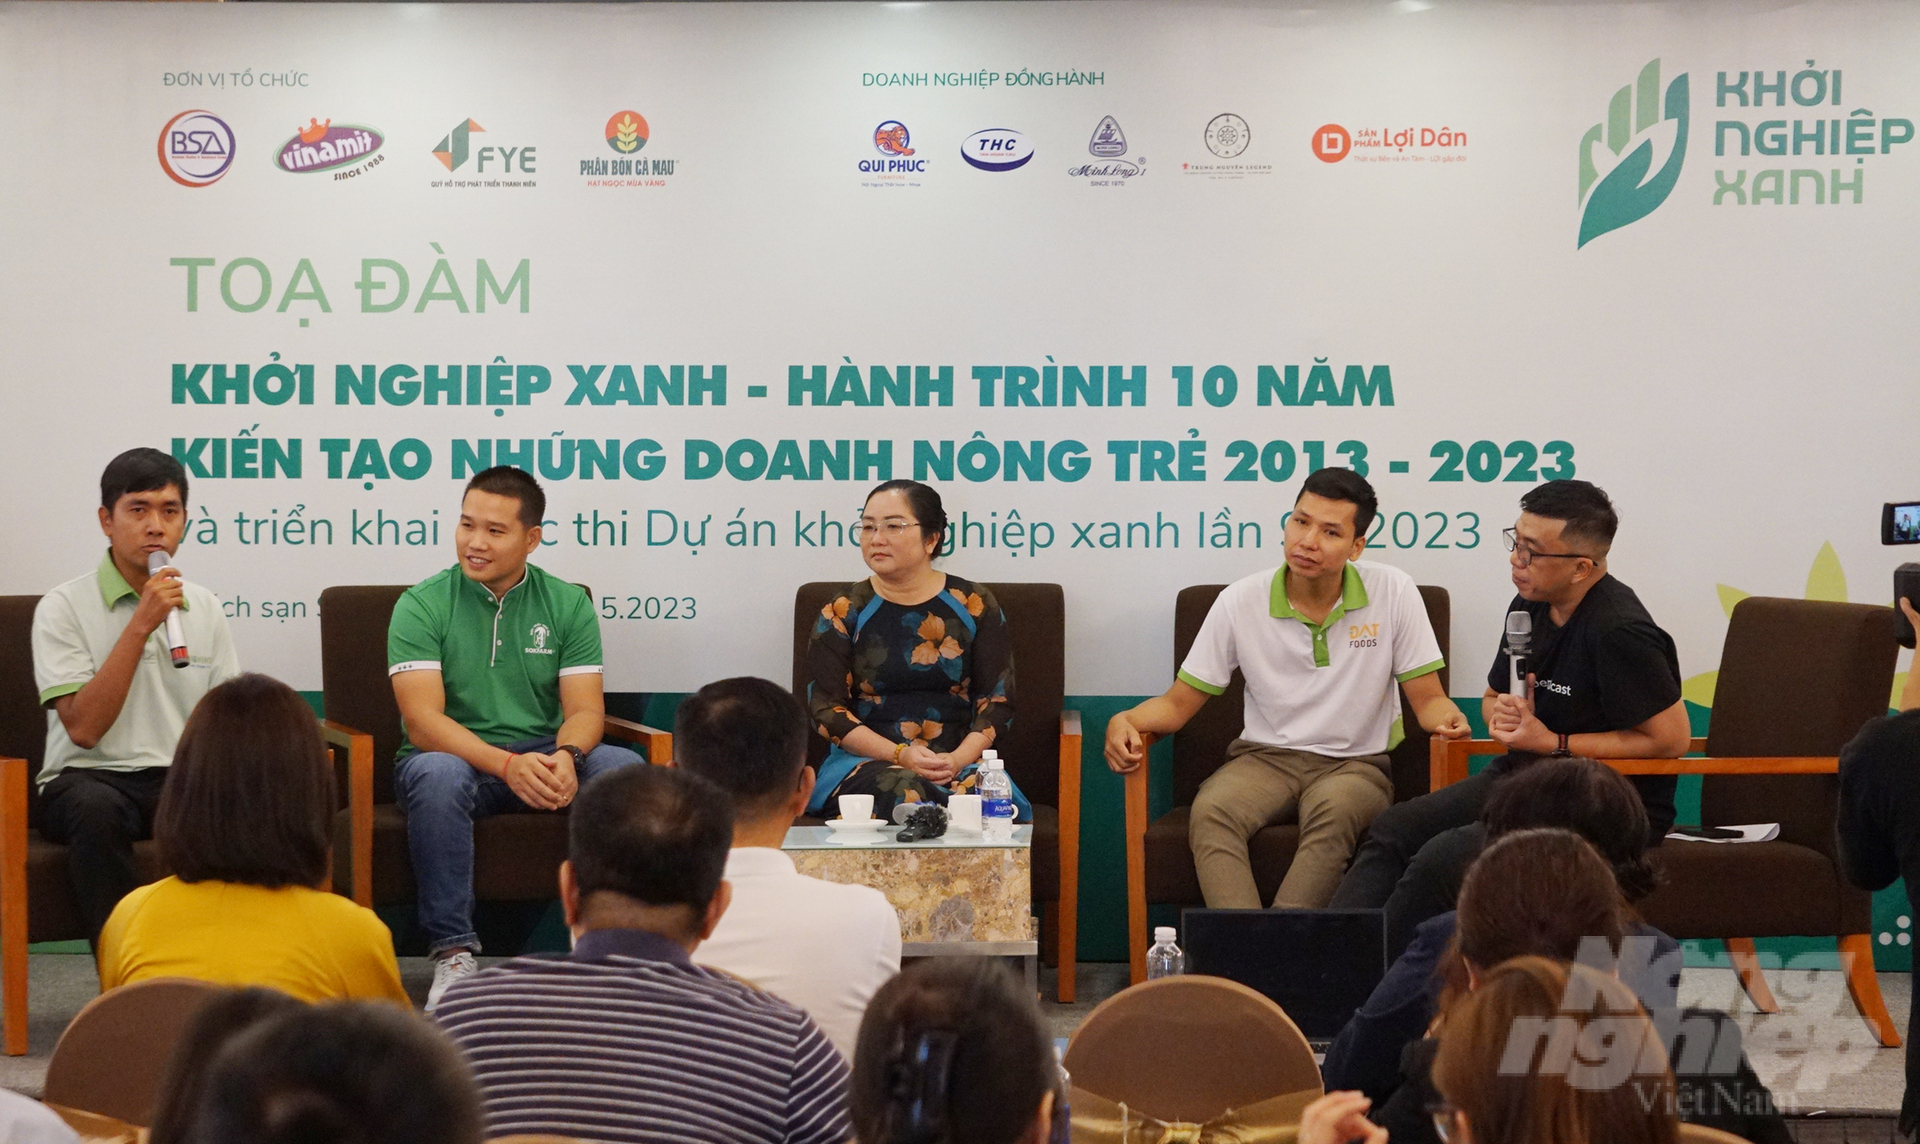 Tọa đàm 'Khởi nghiệp xanh hành trình 10 năm kiến tạo những doanh nông trẻ'. Ảnh: Nguyễn Thủy.